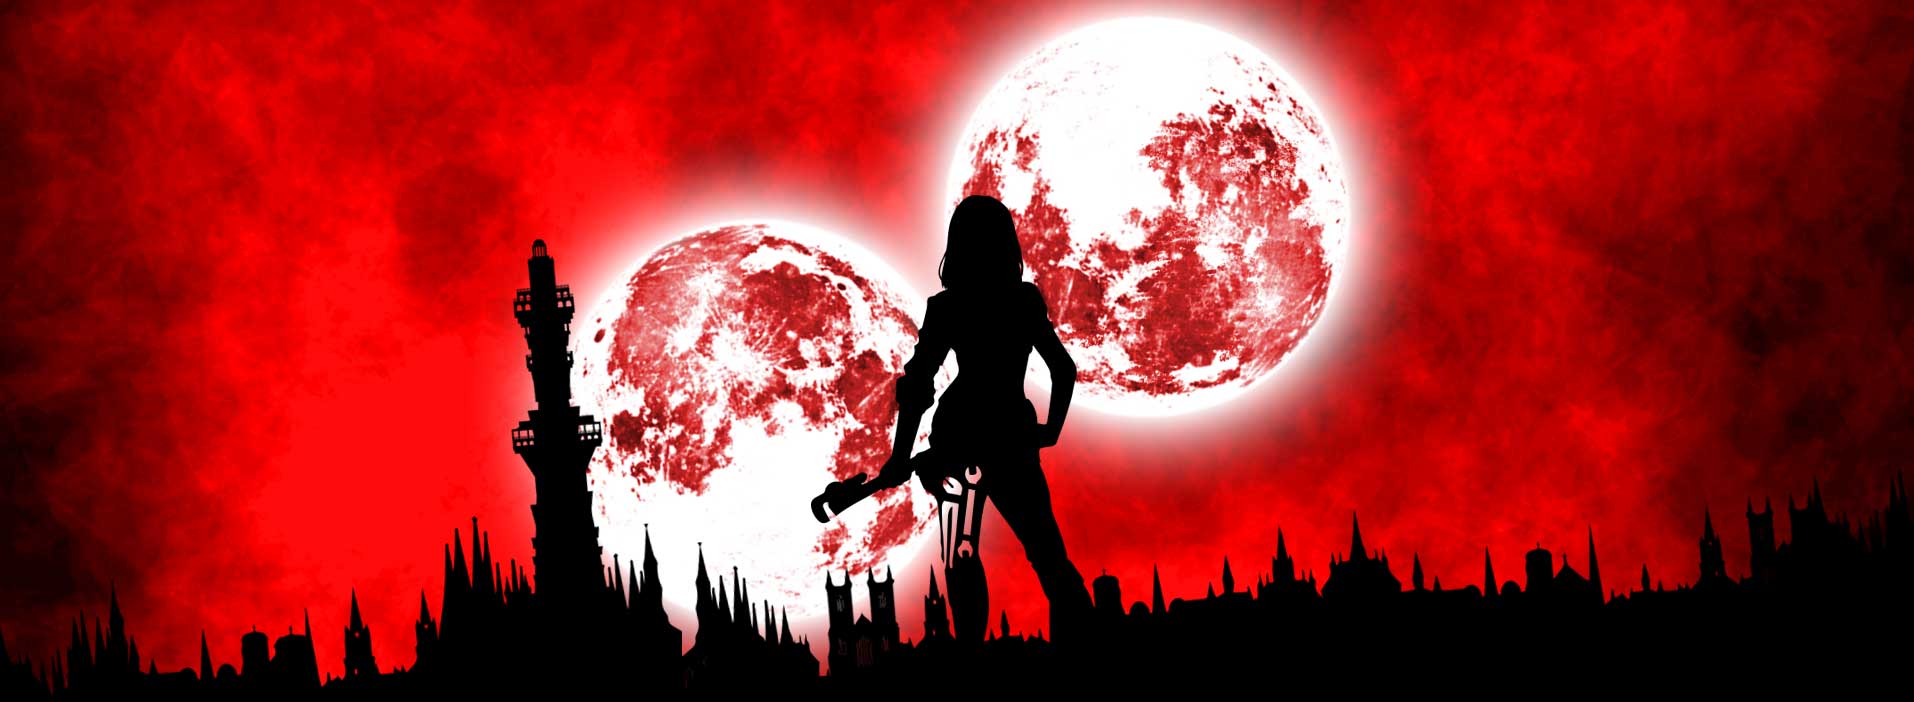 Protagonistin Katrina steht mit einem Schraubenschlüssel vor der Silhouette einer Vampirstadt